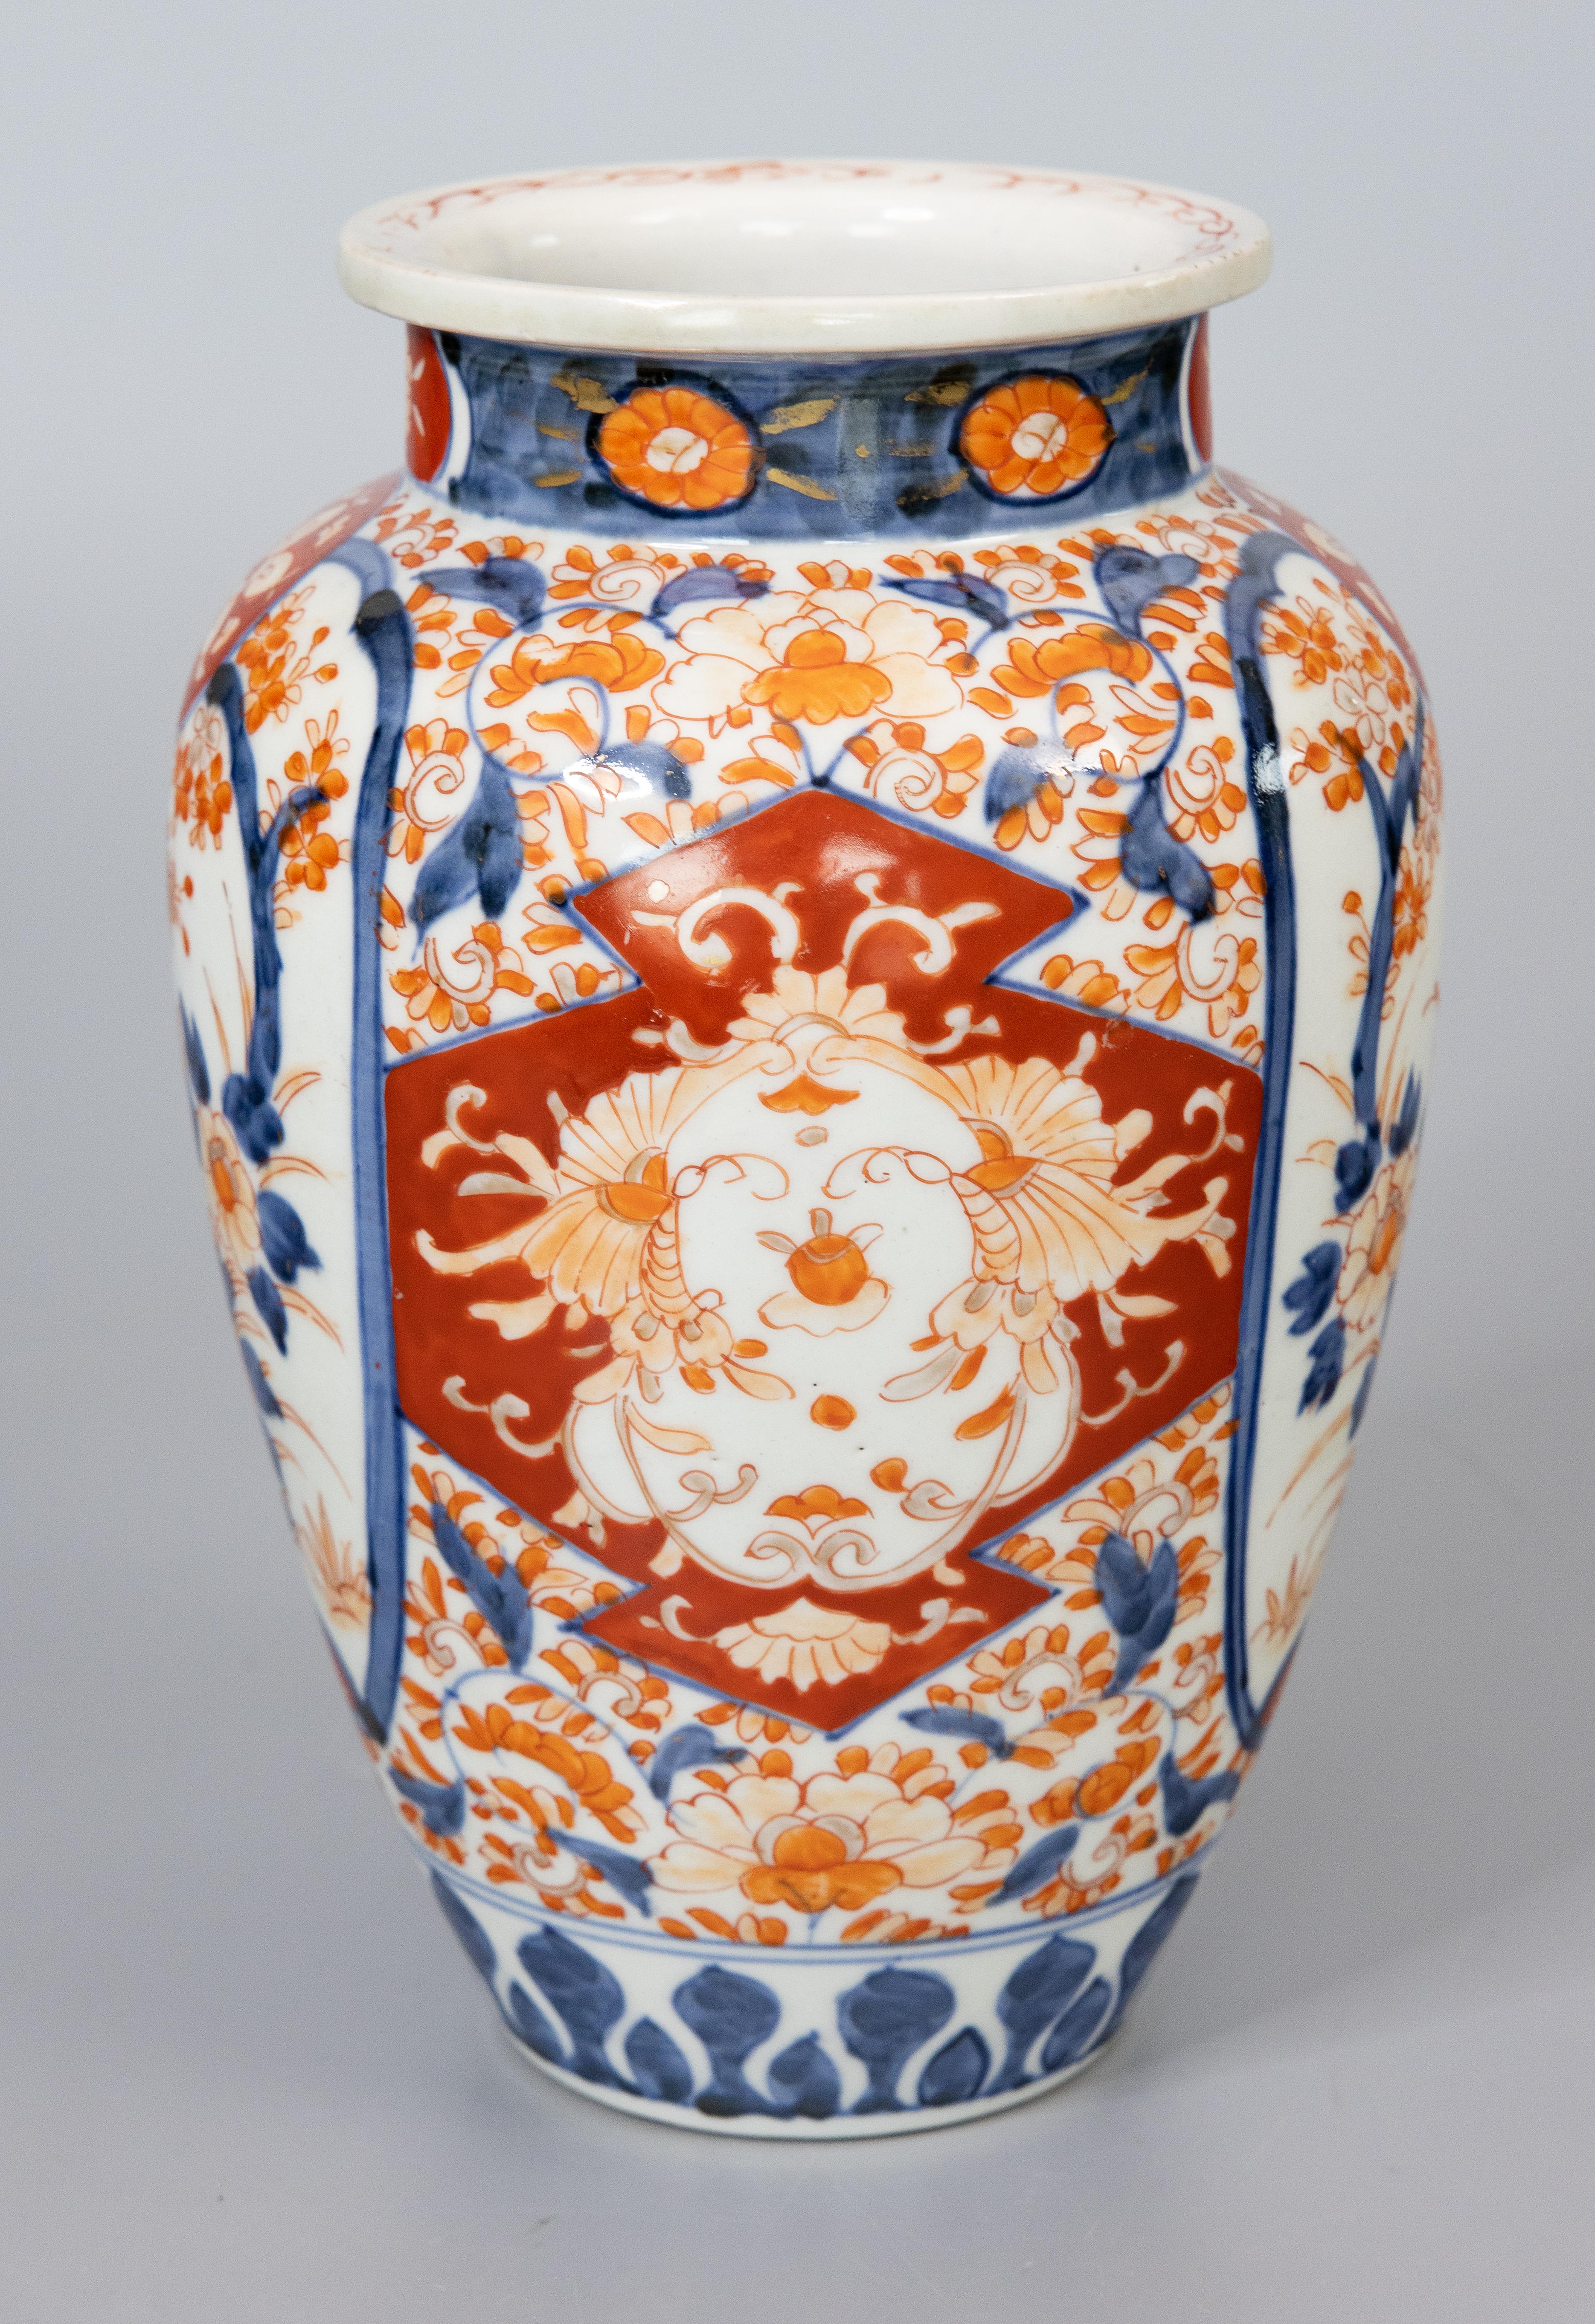 Magnifique vase ancien en porcelaine japonaise Imari du XIXe siècle. Ce vase de belle taille présente une forme agréable et un motif floral peint à la main dans les couleurs traditionnelles d'Imari. Il est dans un état antique magnifique et serait